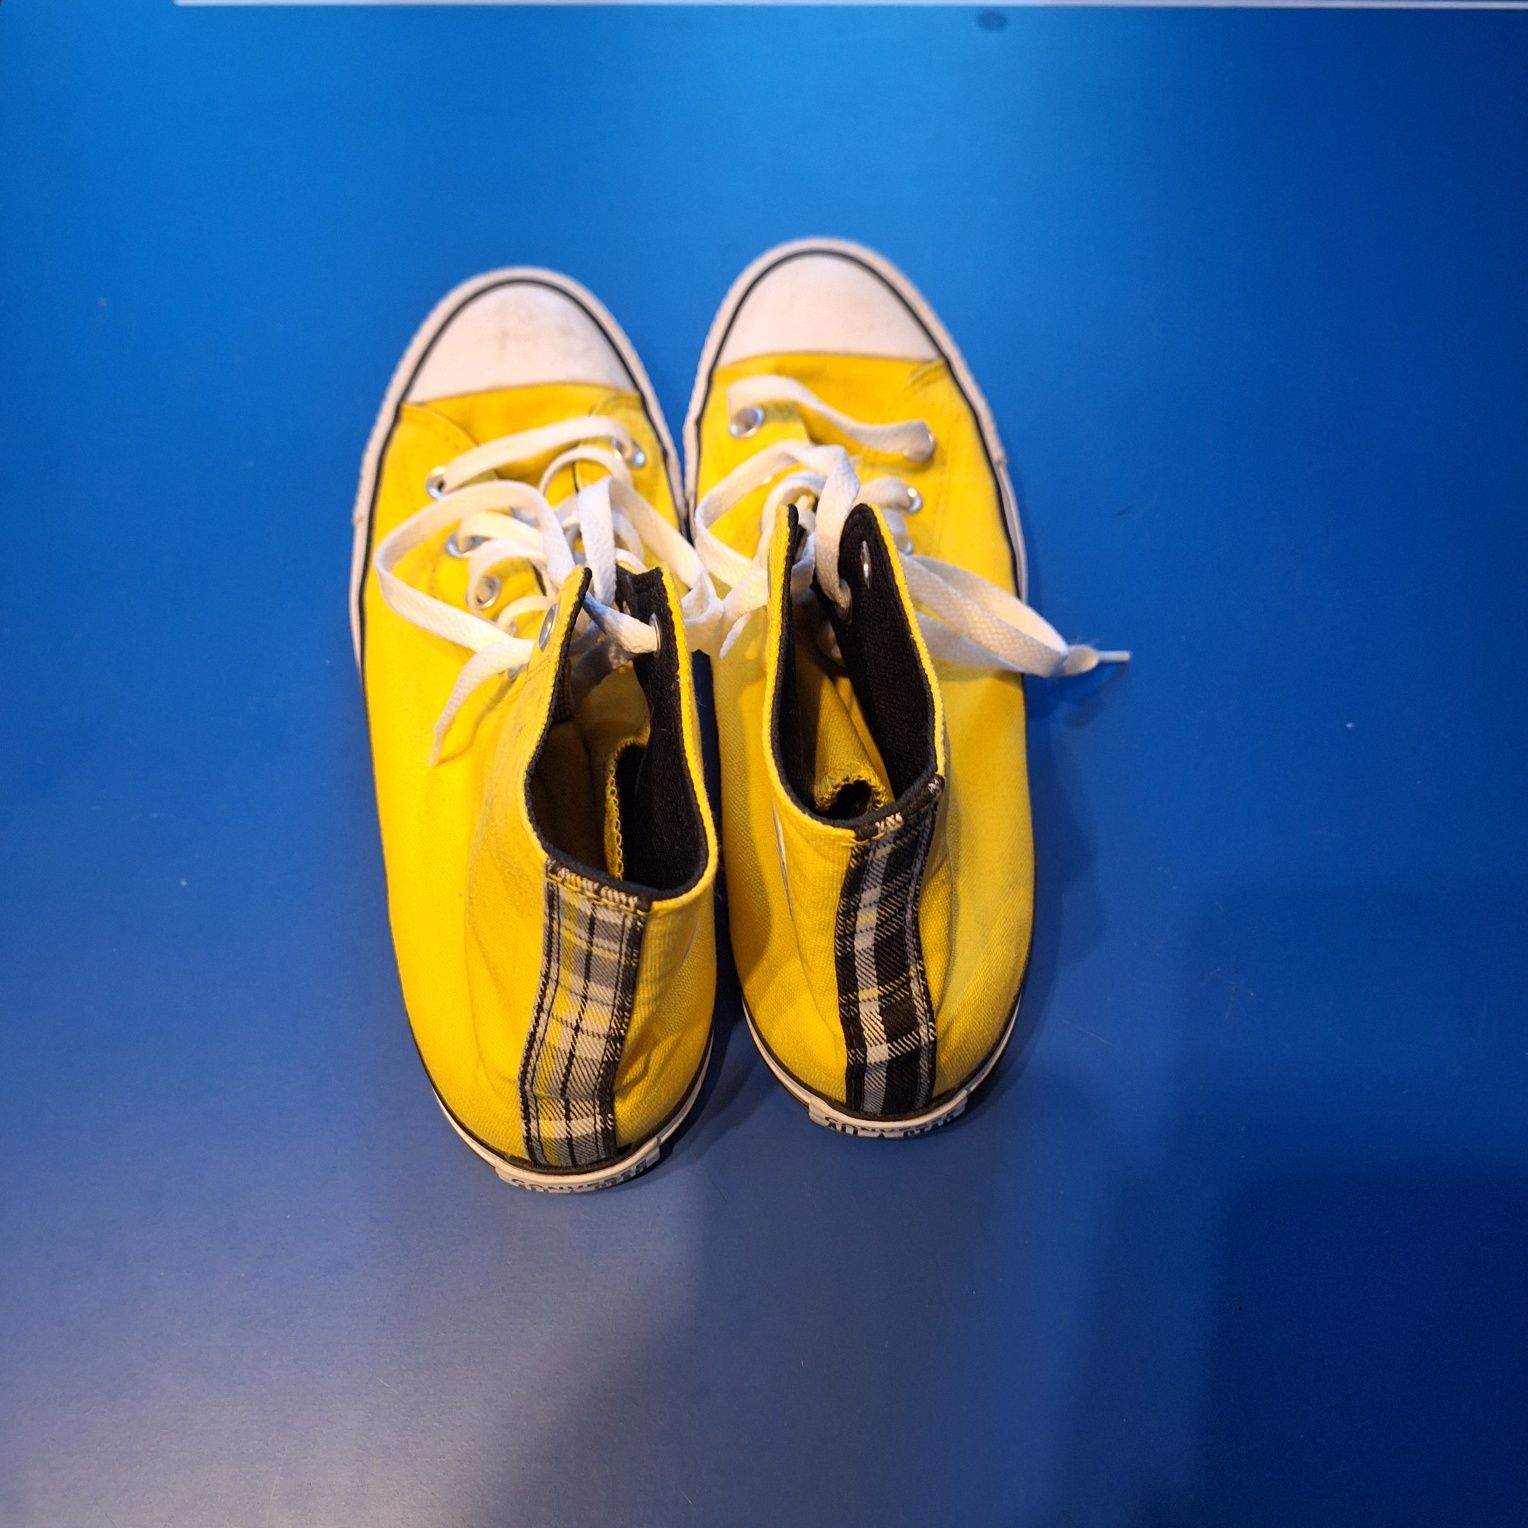 converse buty żółte wysokie nowe, świetny stan, 41/42, cena do negocja